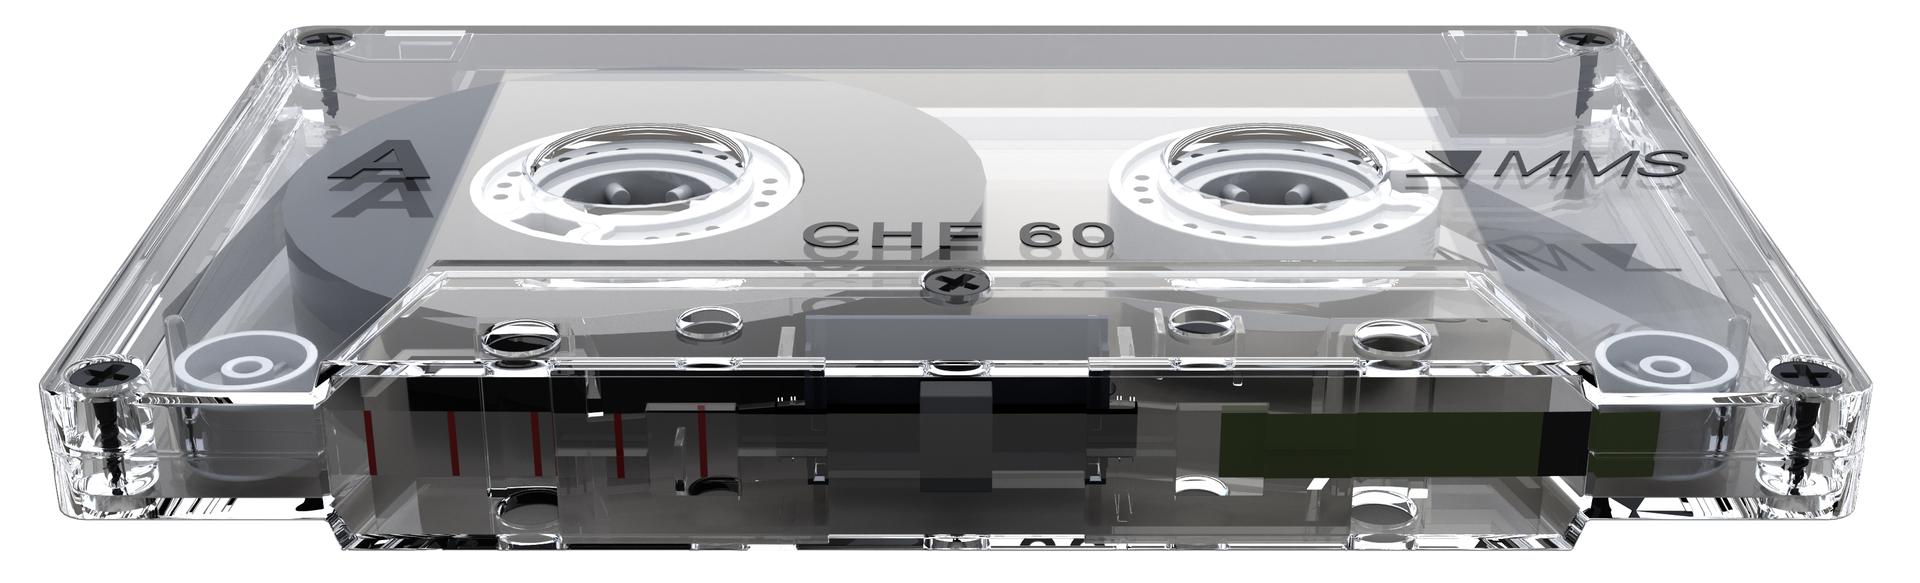 Новые старые компакт-кассеты. 🎼 Кассеты MMS — яркий пример того, как современные технологии помогают оживить прошлое.